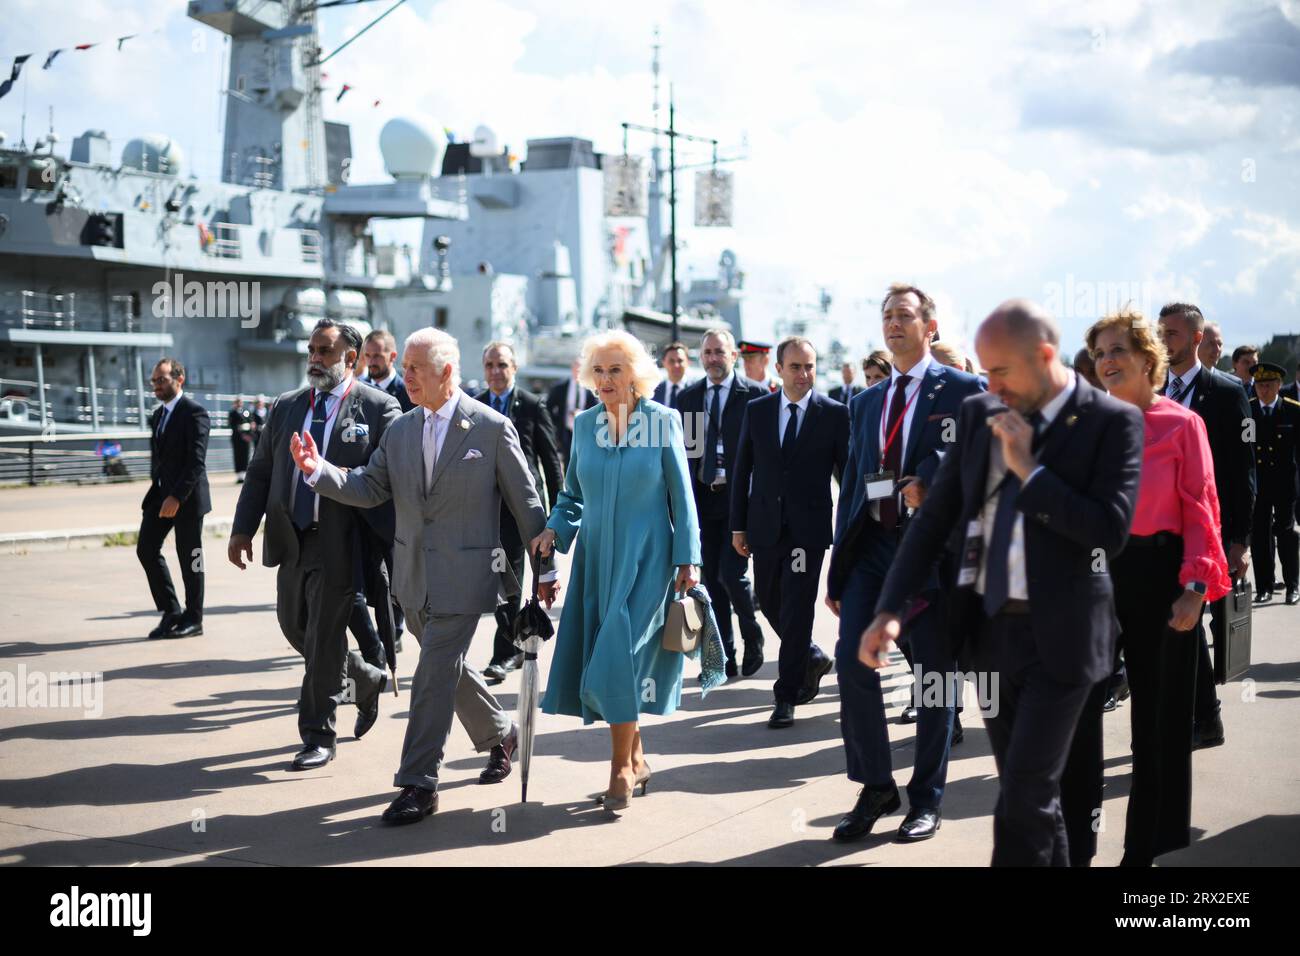 König Karl III. Und Königin Camilla spazieren am Ufer nach dem Besuch der HMS Iron Duke in Bordeaux, am dritten Tag des Staatsbesuchs in Frankreich. Bilddatum: Freitag, 22. September 2023. Stockfoto